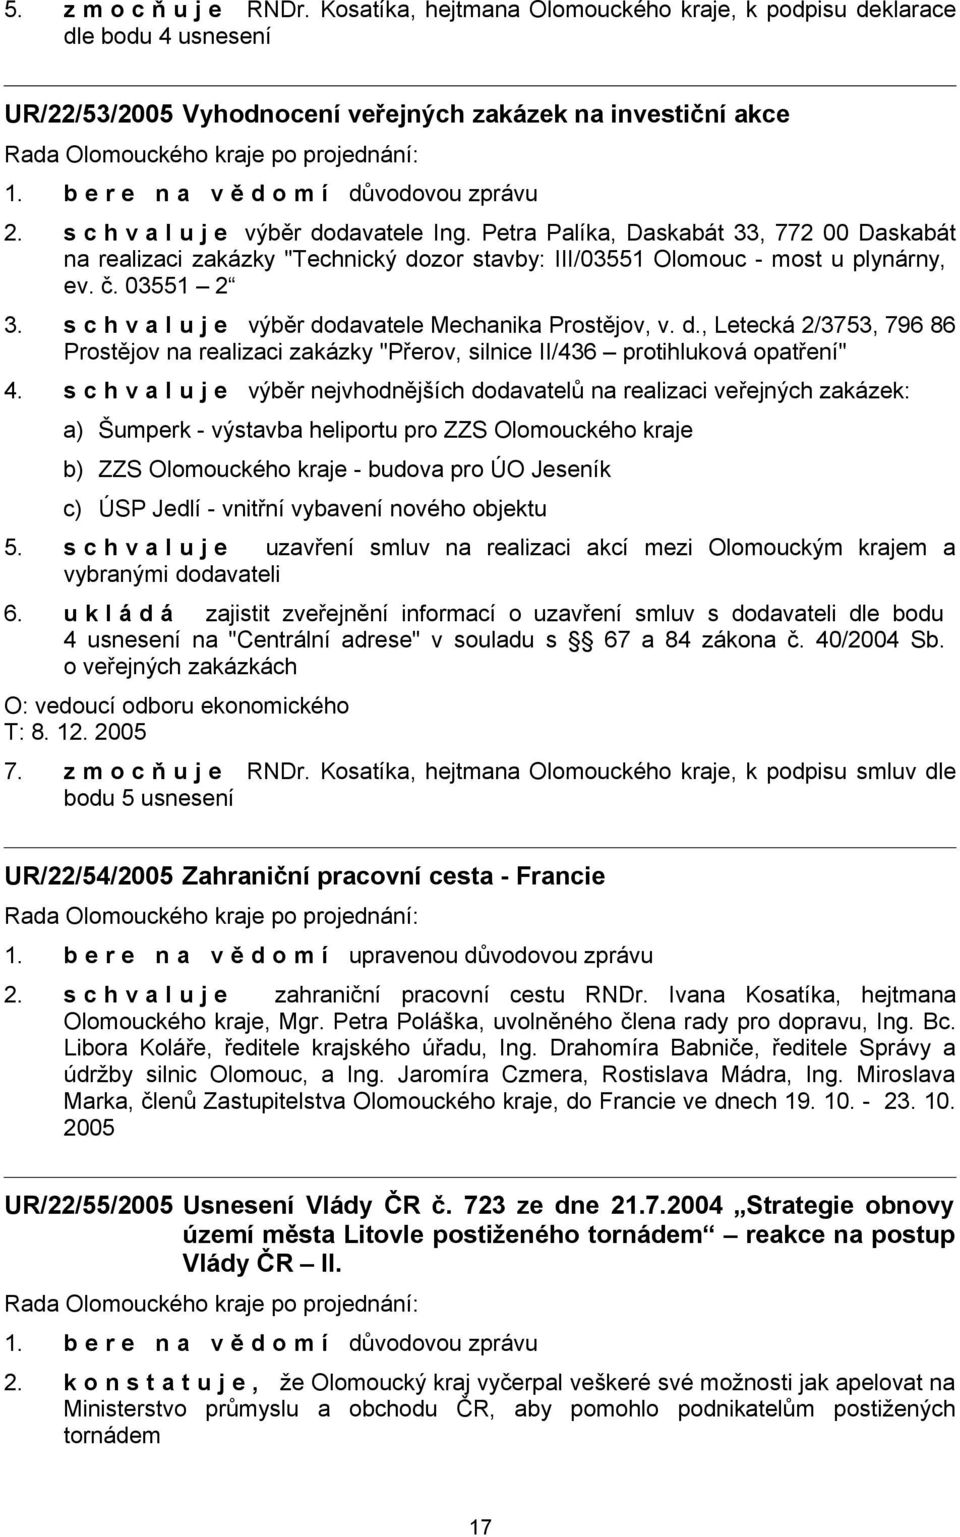 s c h v a l u j e výběr dodavatele Mechanika Prostějov, v. d., Letecká 2/3753, 796 86 Prostějov na realizaci zakázky "Přerov, silnice II/436 protihluková opatření" 4.